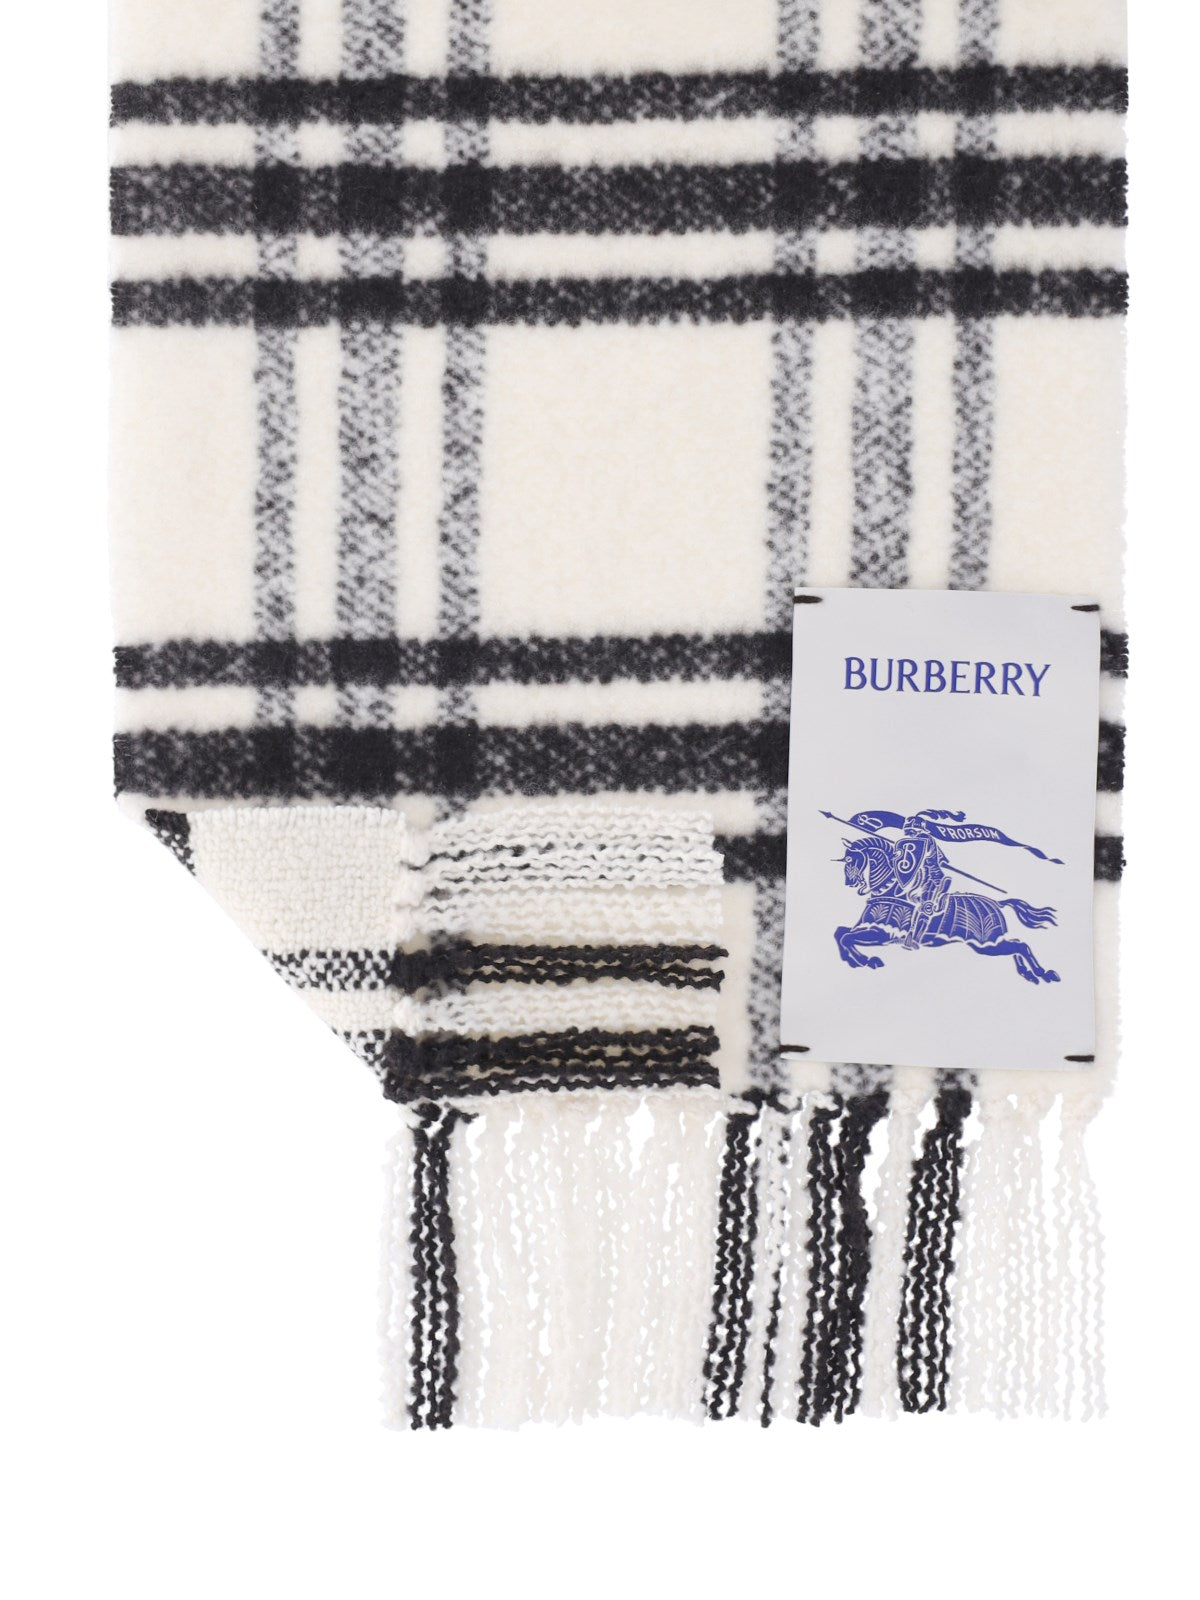 burberry sciarpa motivo check-sciarpe & foulard-Burberry-sciarpa motivo check burberry, in lana bianca, motivo dettagli neri, etichetta logo fronte, design con frange. codice prodotto 8079781b7326 composizione: 100% lana merino dimensioni/vestibilità: a 168 x l 30 cm made in: italia - Dresso